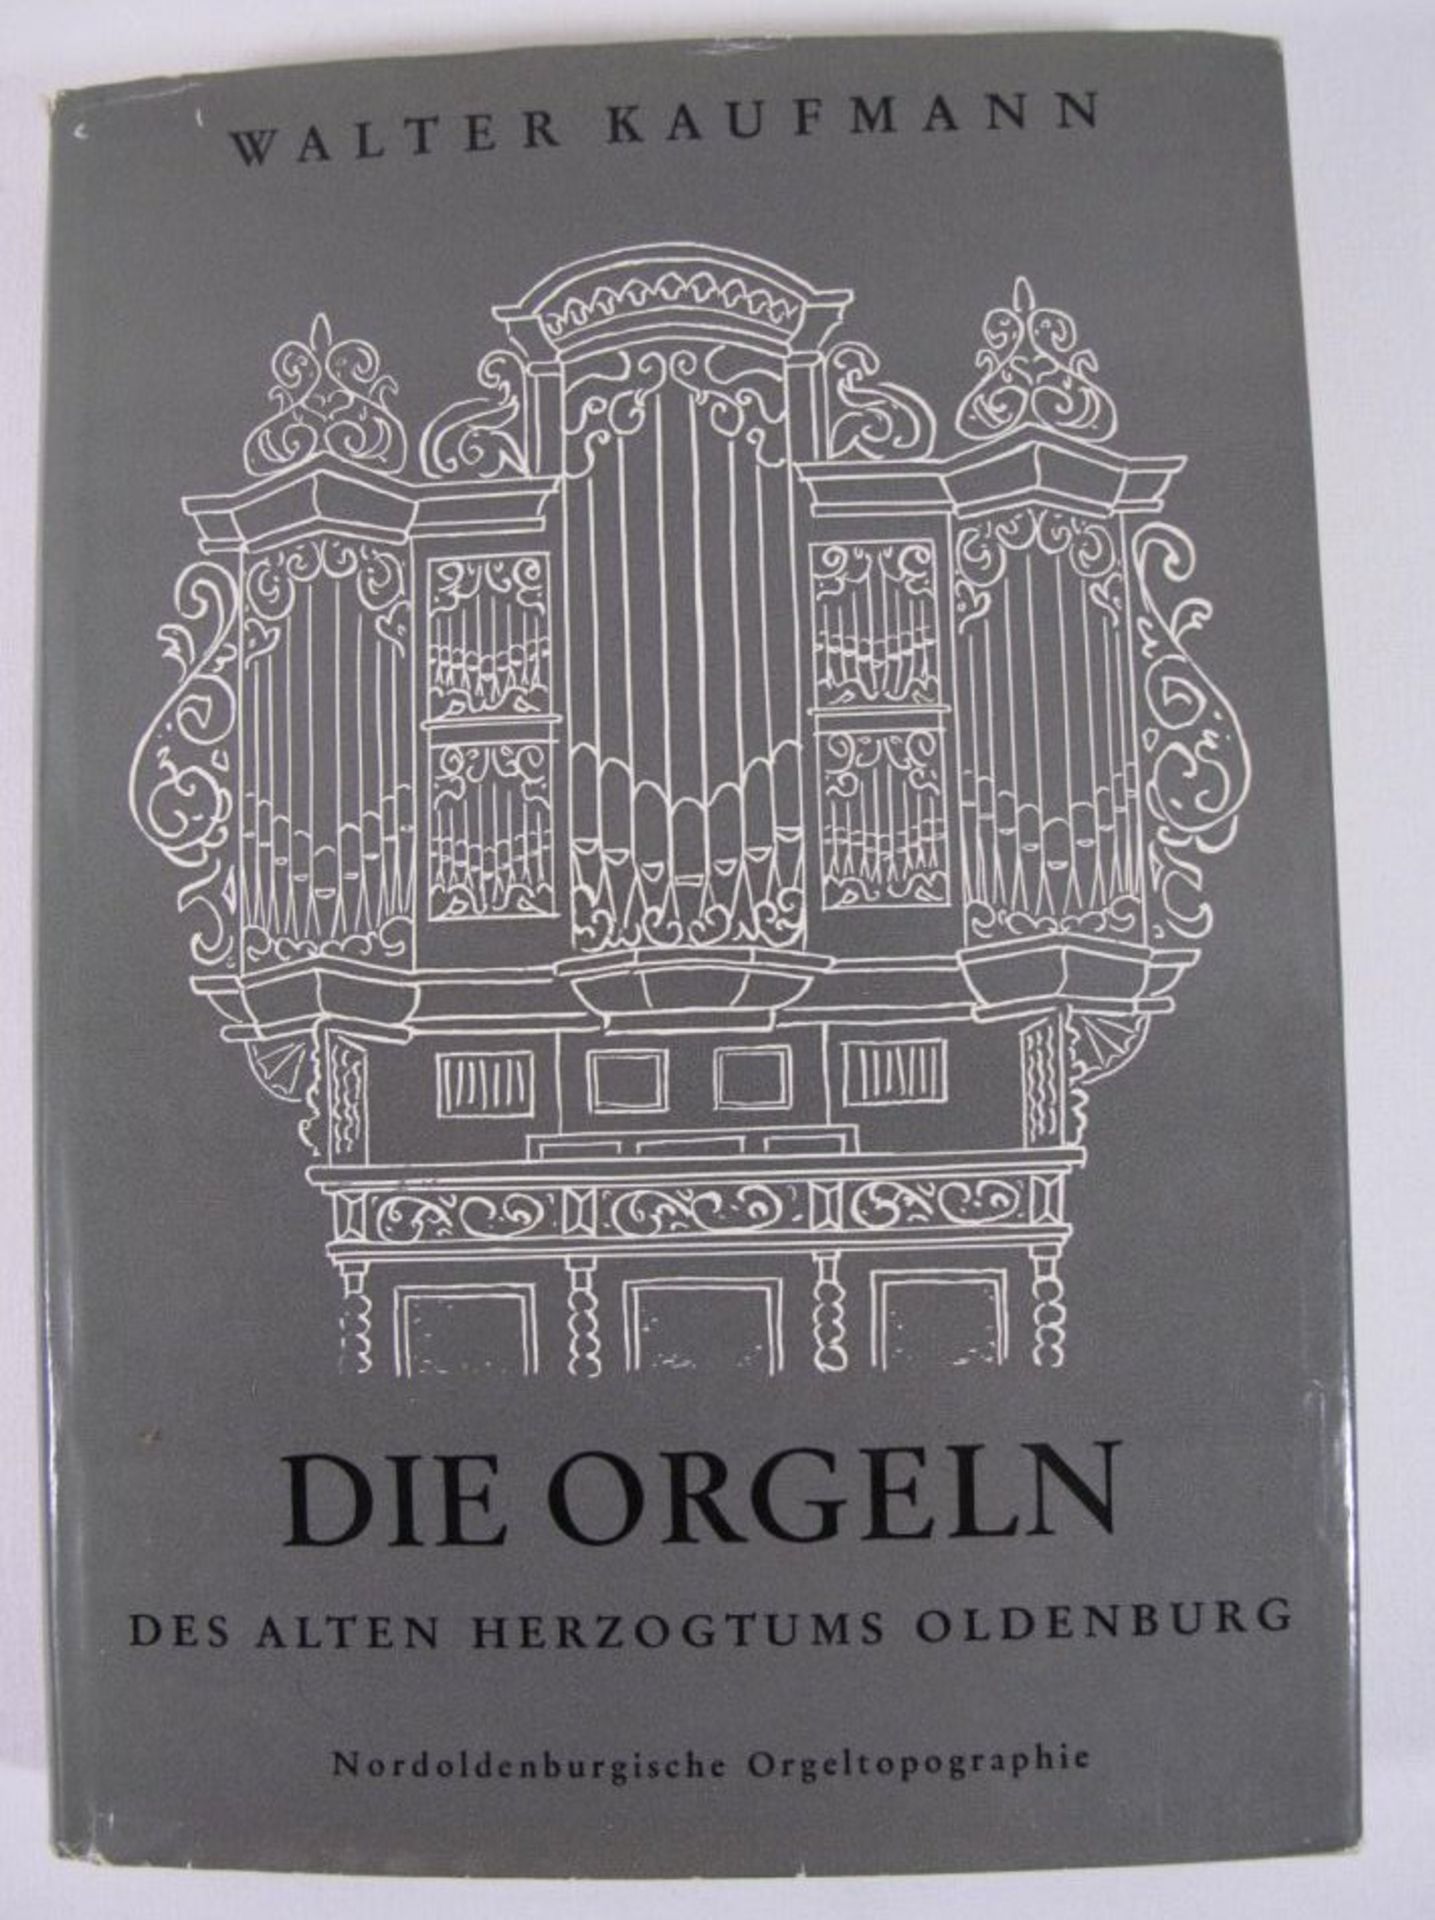 Die Orgeln des alten Herzogtums Oldenburg, Walter Kaufmann.